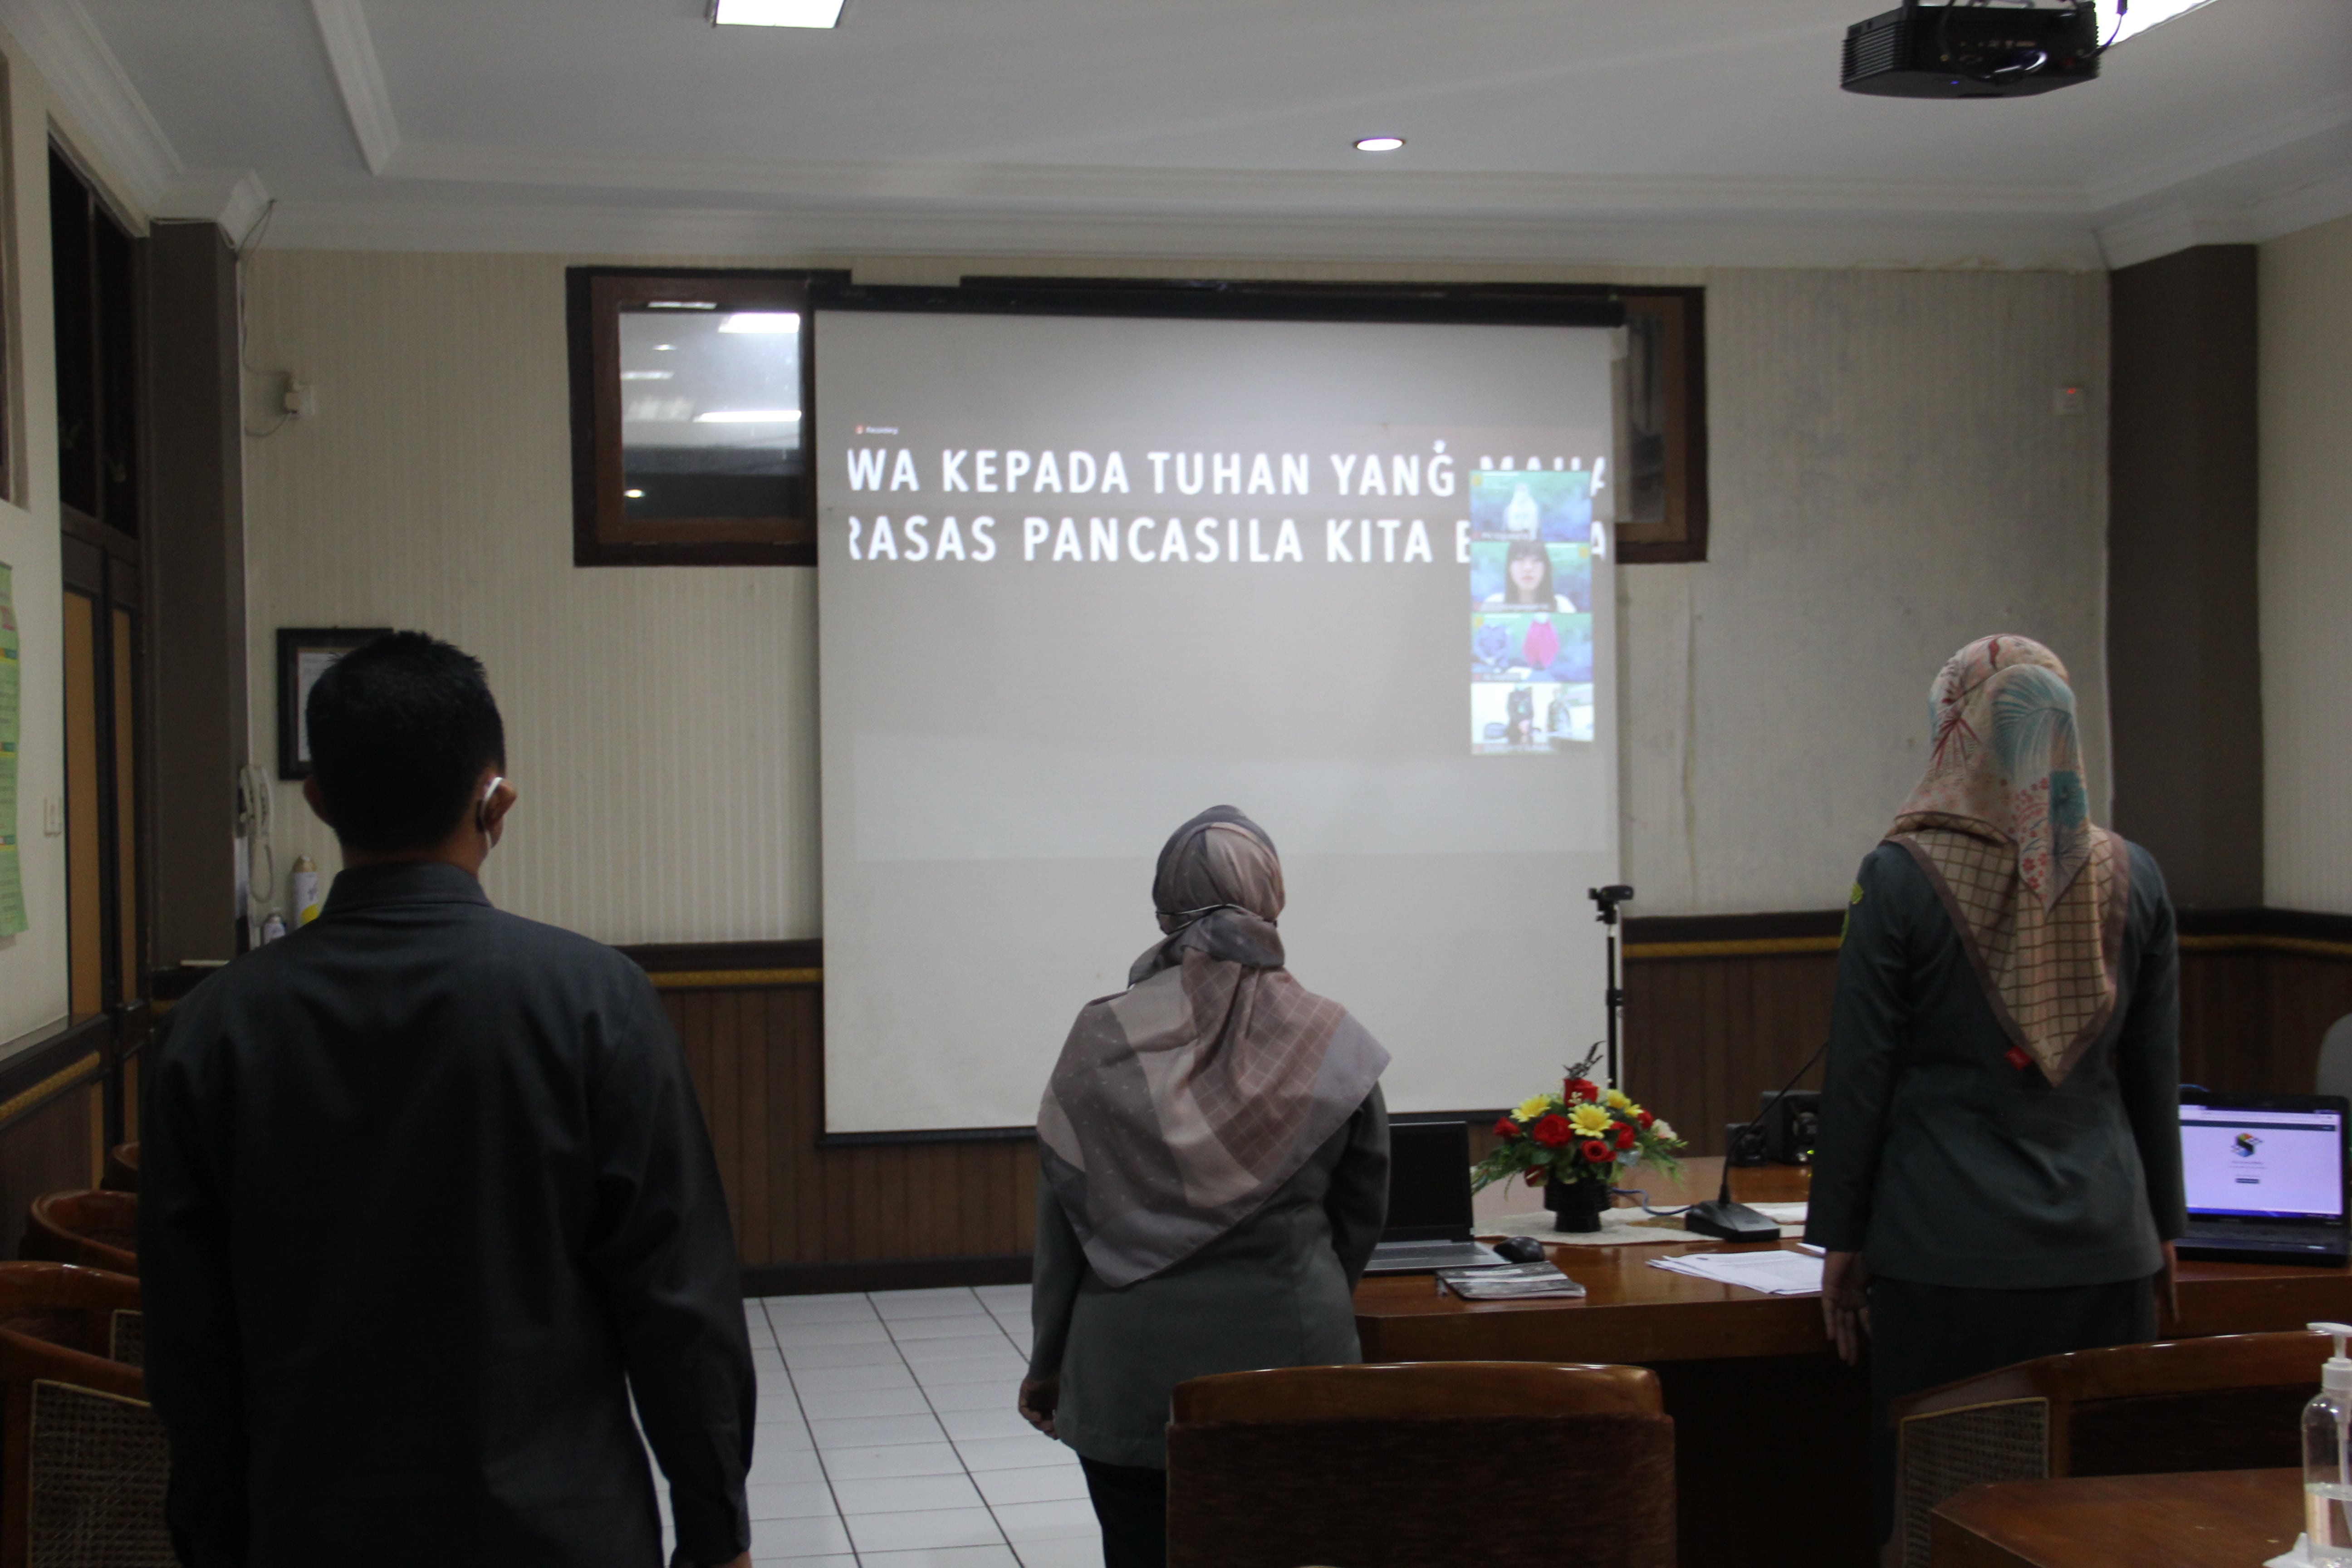 Sekretaris dan Kepegawaian Pengadilan Negeri Yogyakarta Mengikuti Bimtek dan Sosialisasi SIKEP, SAPK, MySAPK dan SITARA 